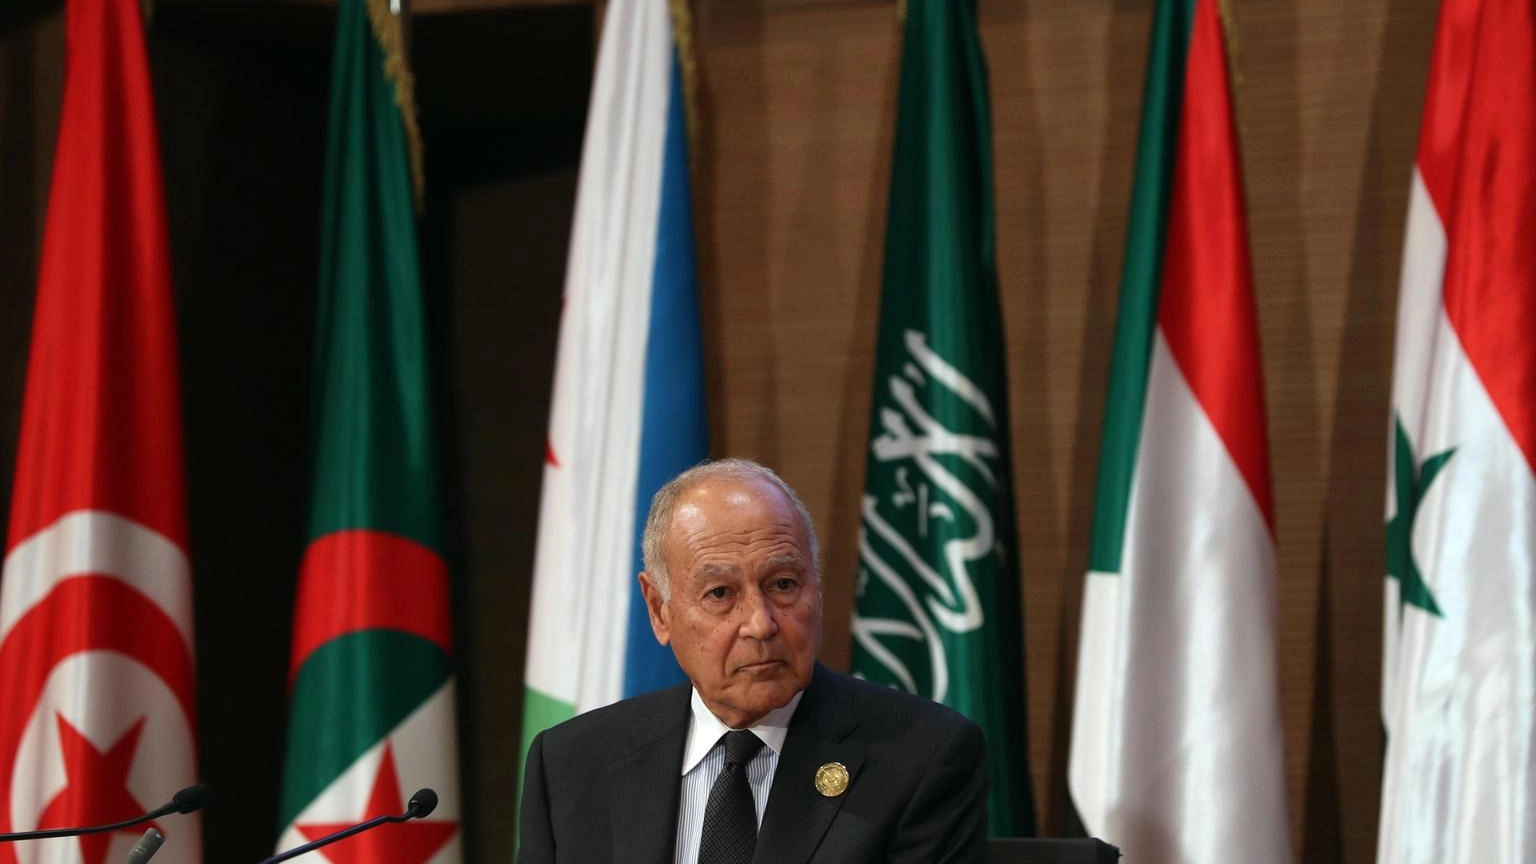 Lega Araba condanna violenza 'da entrambe le parti'